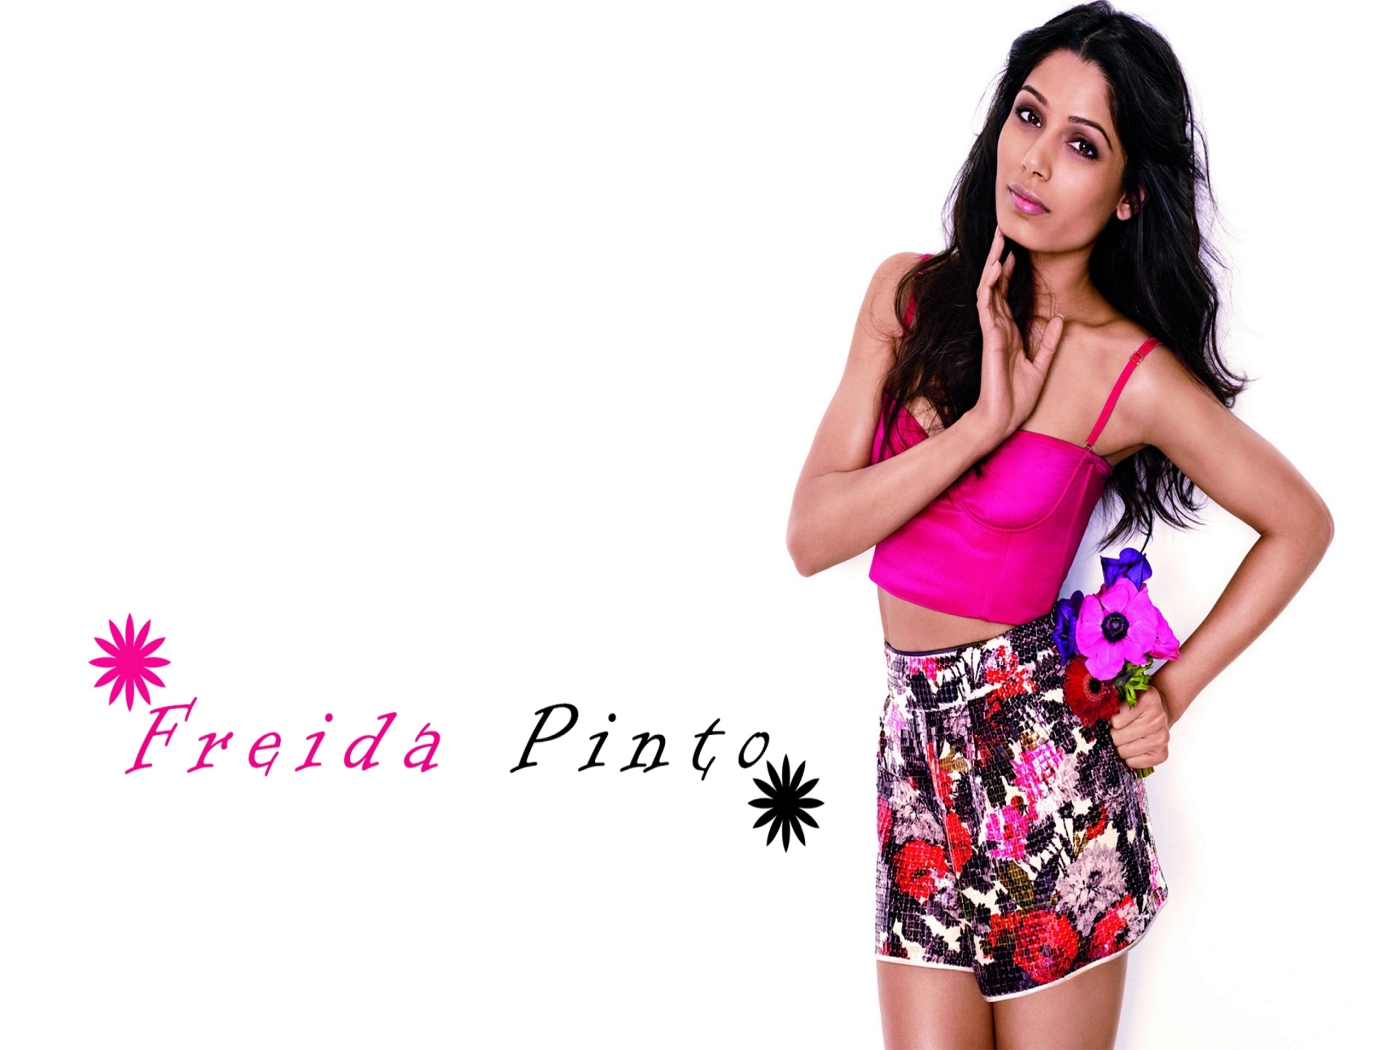 Glamorous Freida Pinto for 1400 x 1050 resolution